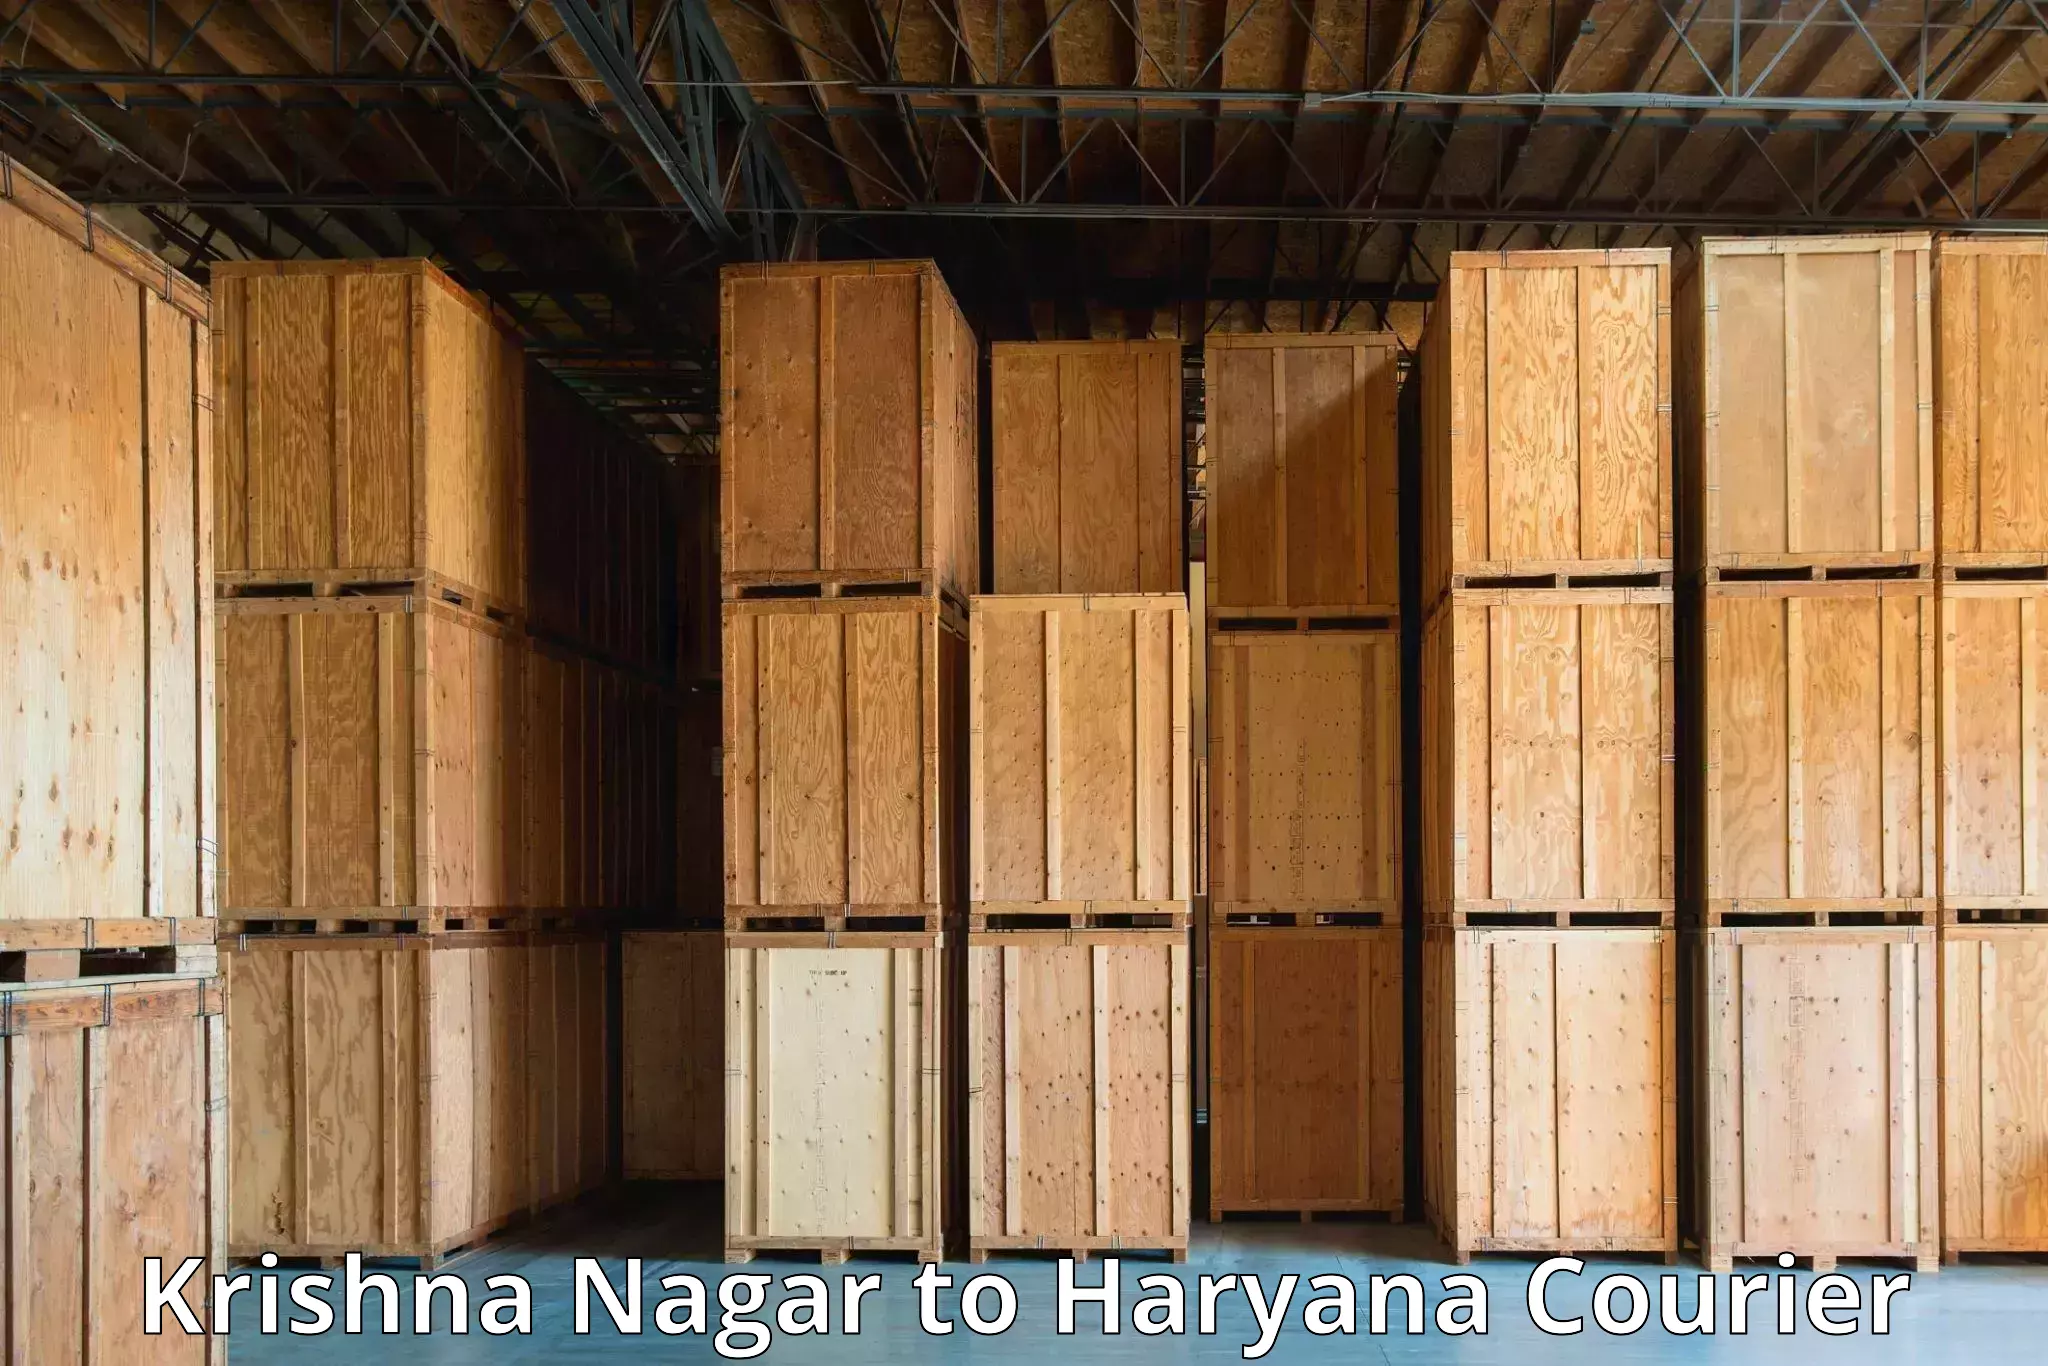 Global shipping networks Krishna Nagar to Yamuna Nagar